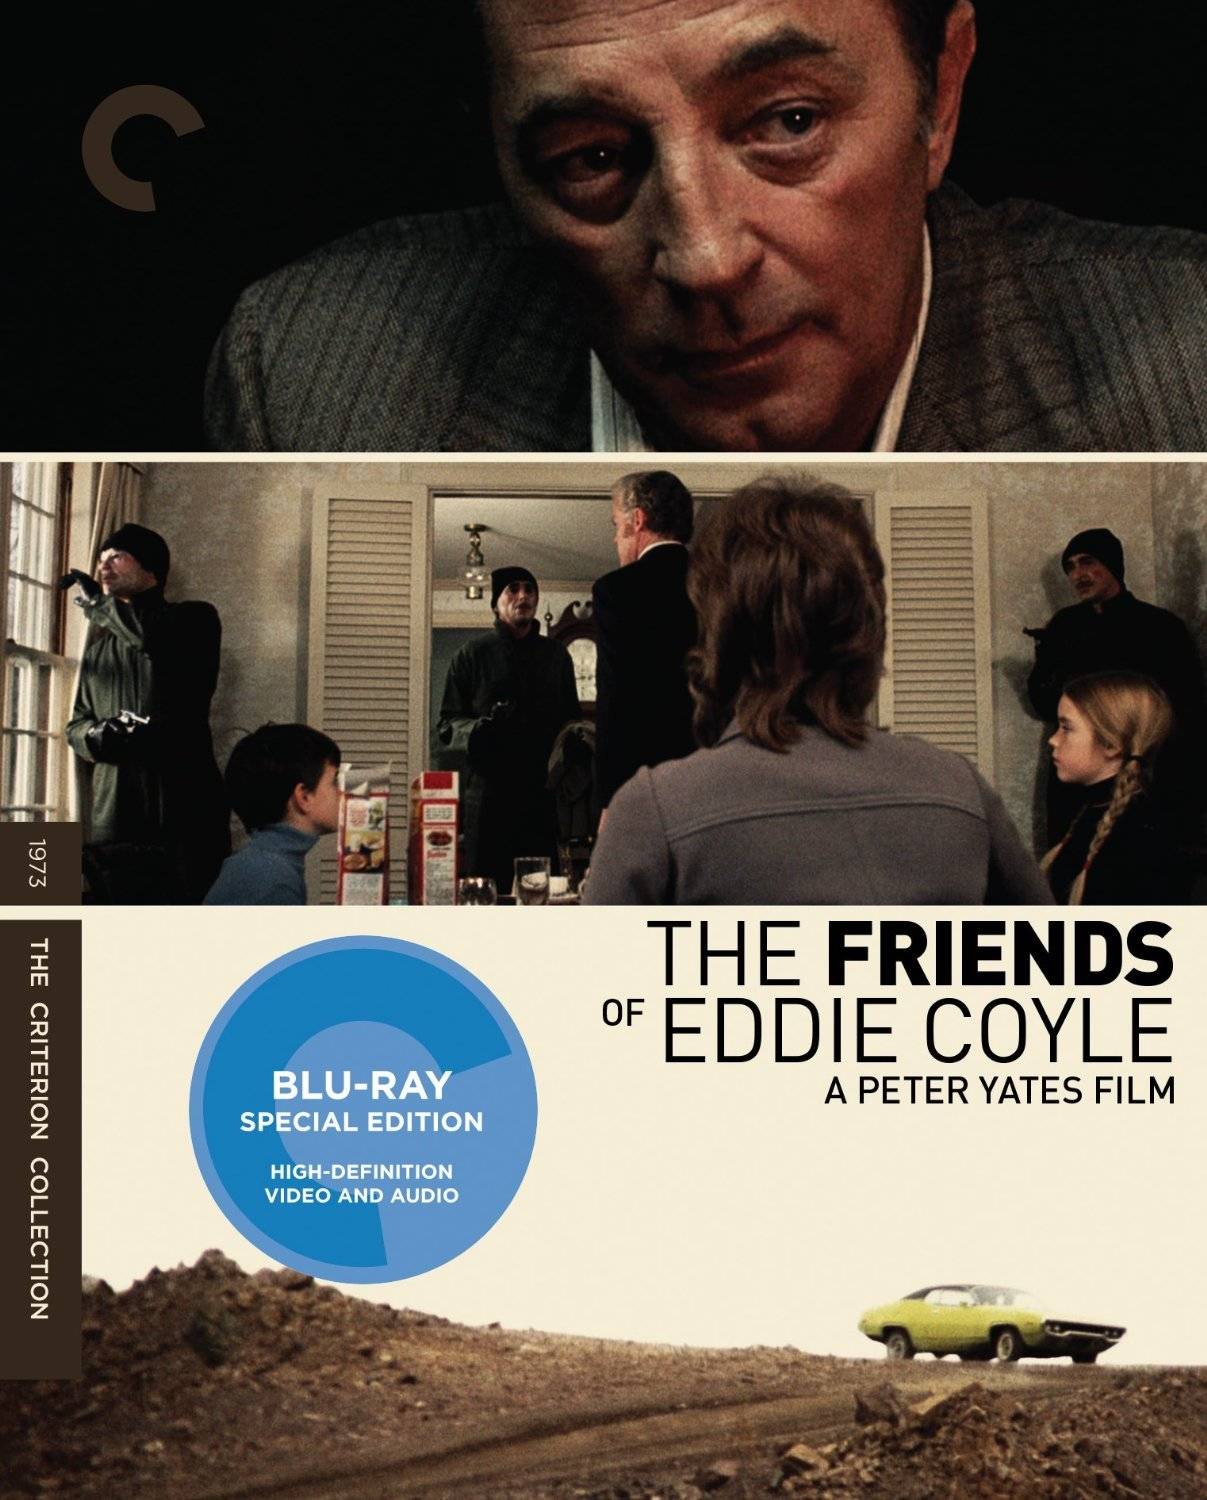 The Friends of Eddie Coyle, dir. PETER YATES